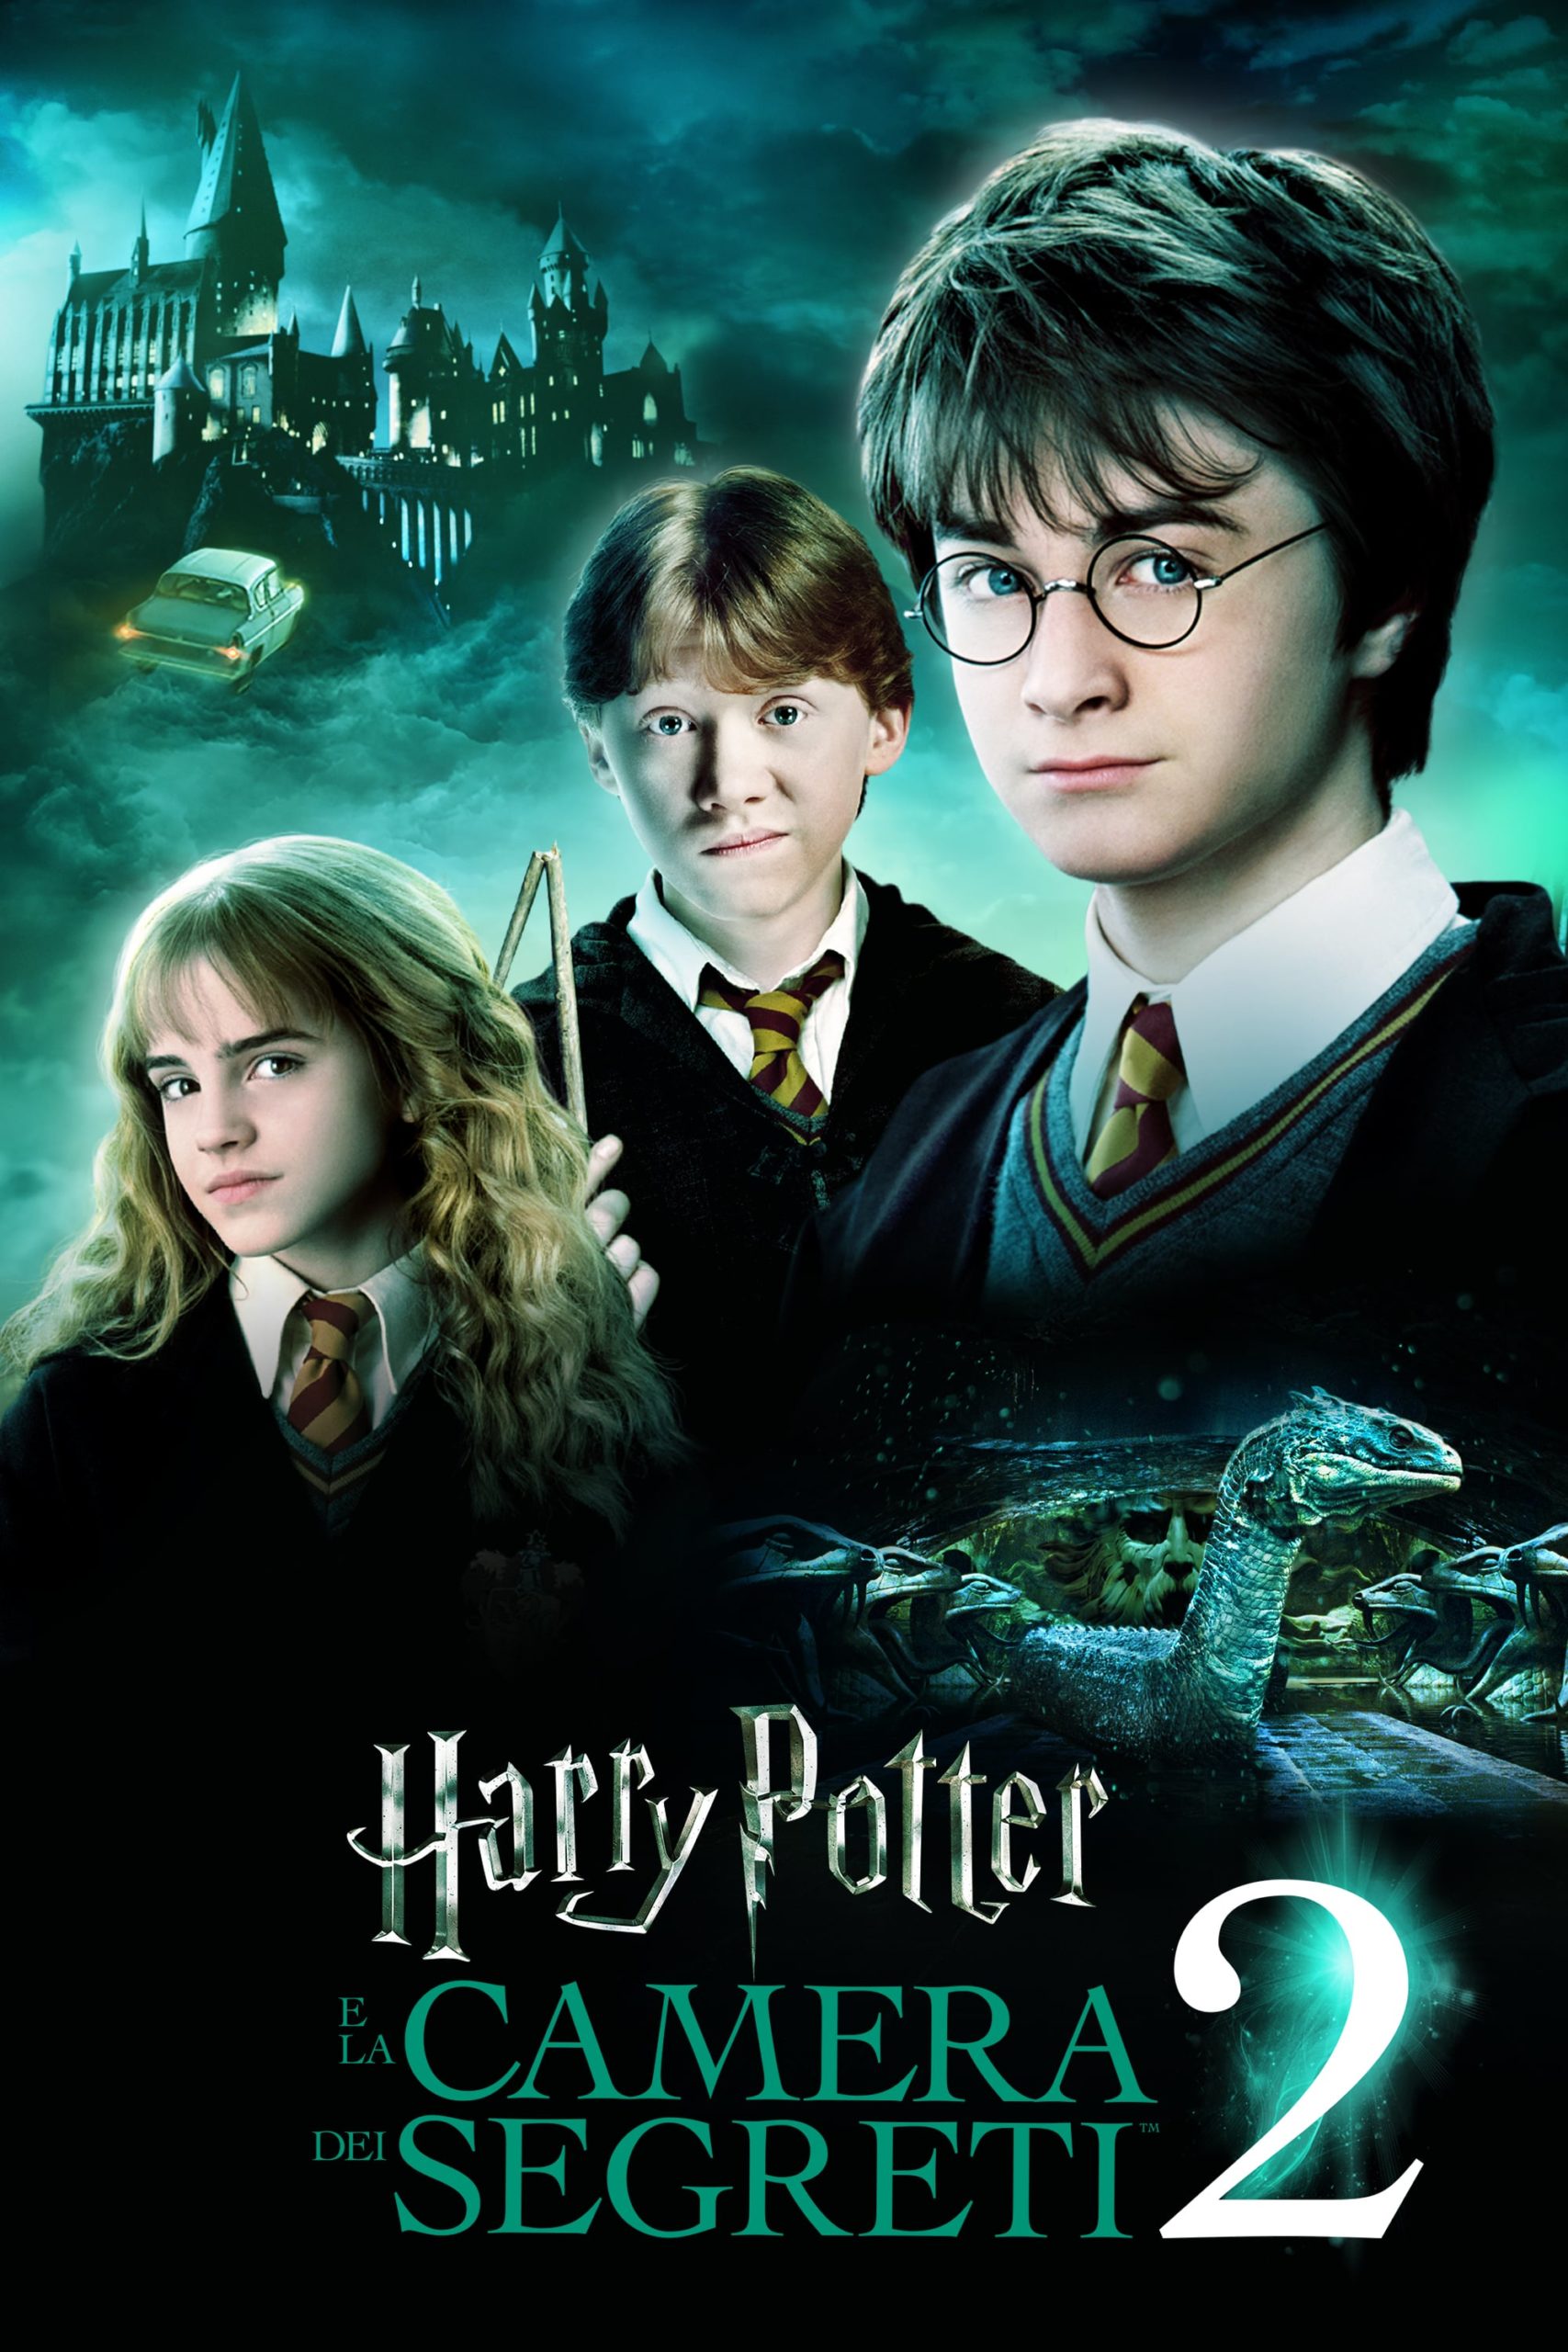 Poster for the movie "Harry Potter e la camera dei segreti"